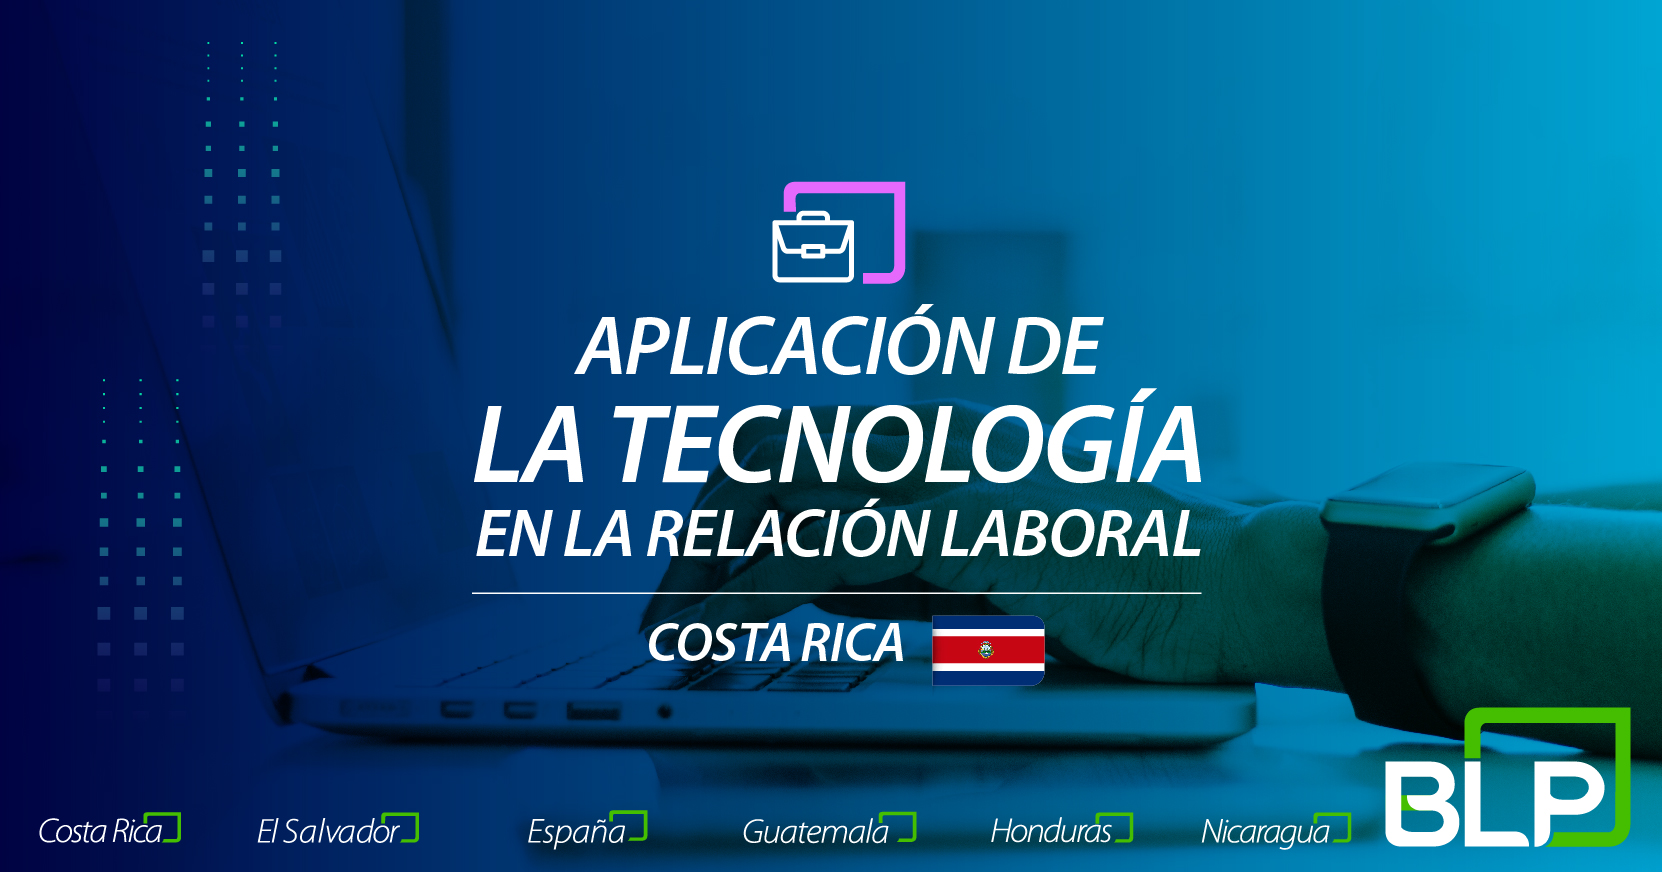 Aplicación de la tecnología en las relaciones laborales: la perspectiva de Costa Rica